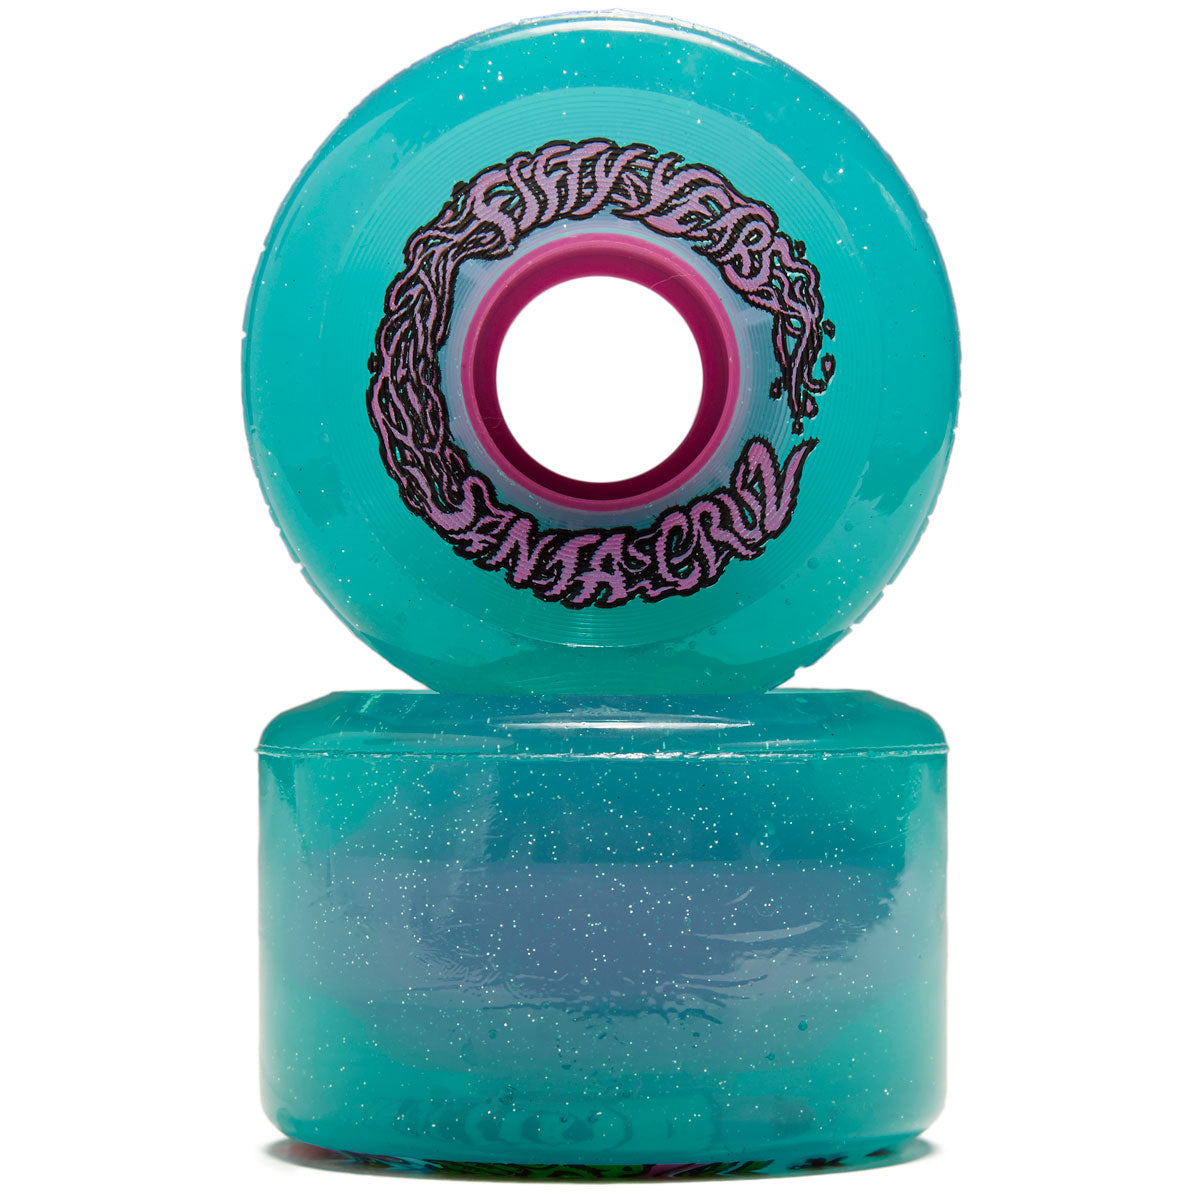 Slime Balls Meek Slasher OG Slime 78a Skateboard Wheels - Green Glitter - 60mm image 2